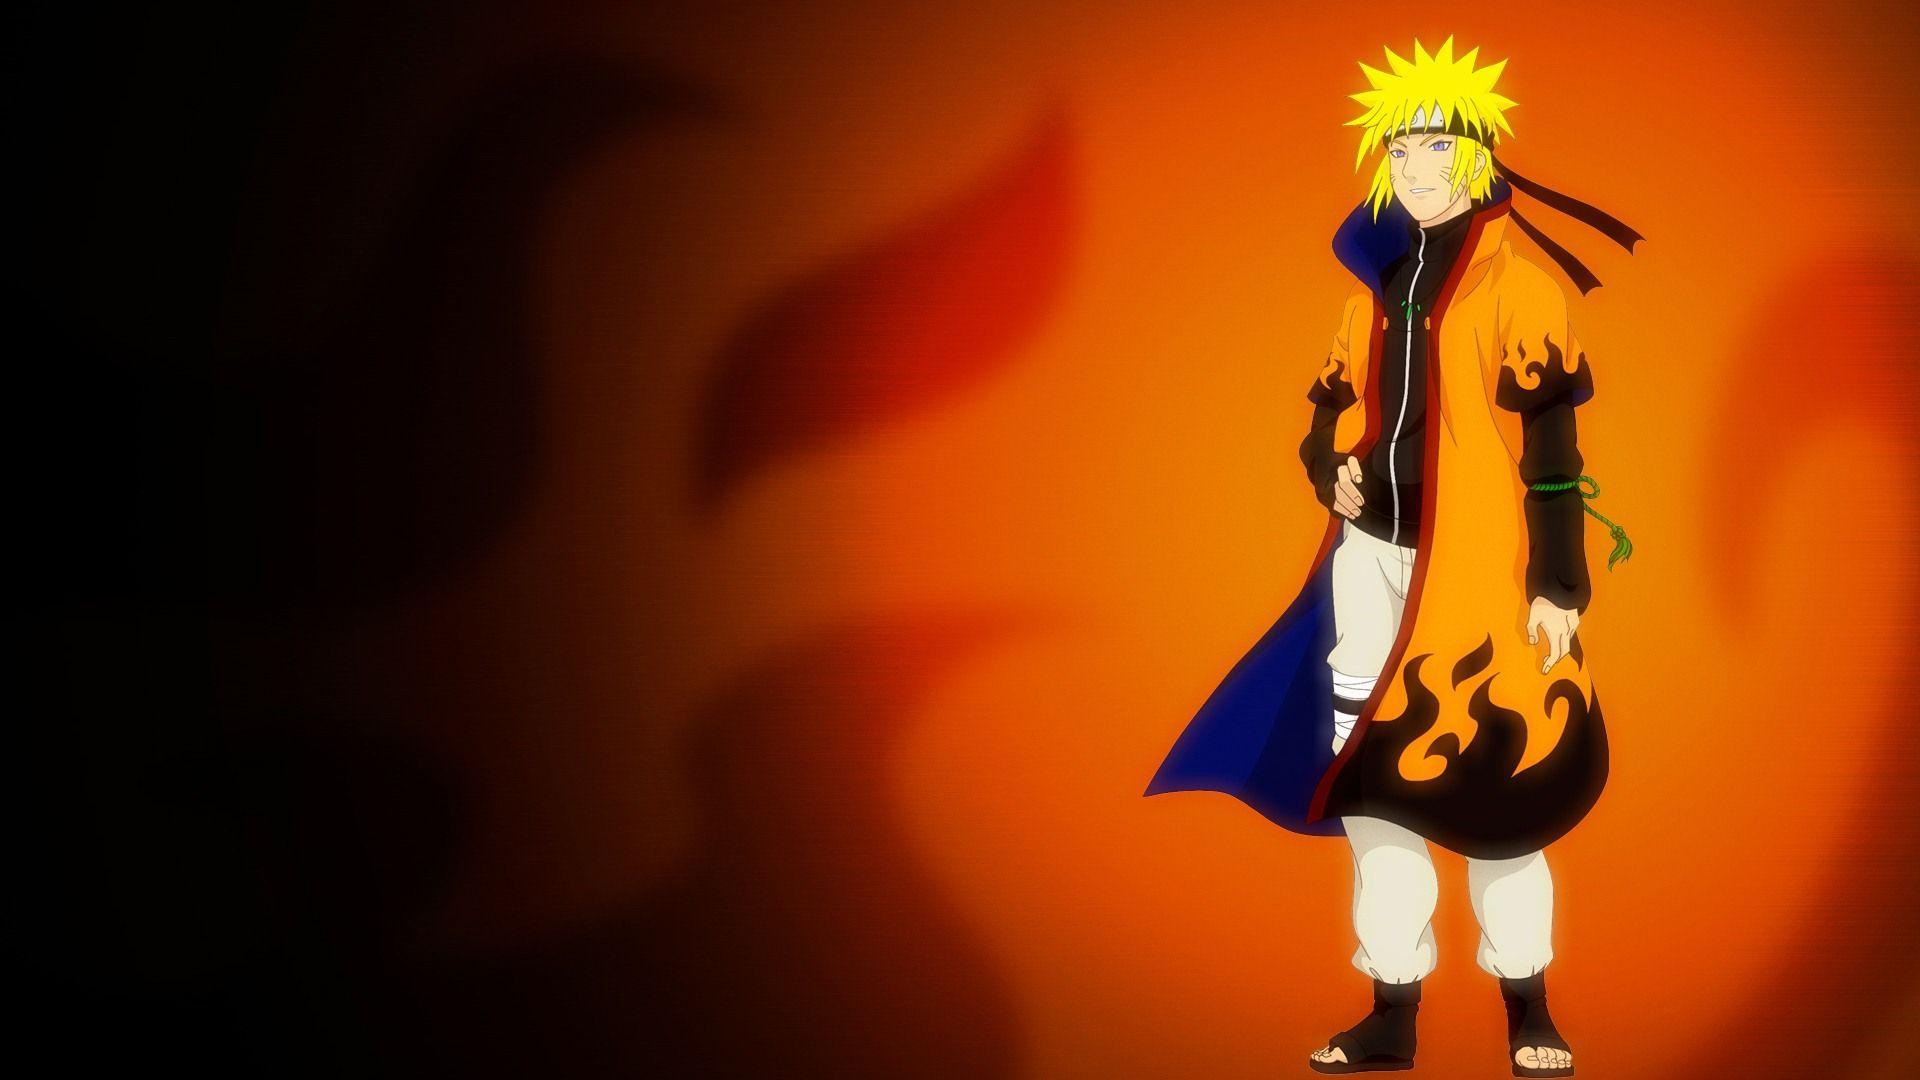 Naruto HD anime wallpaper. Anime